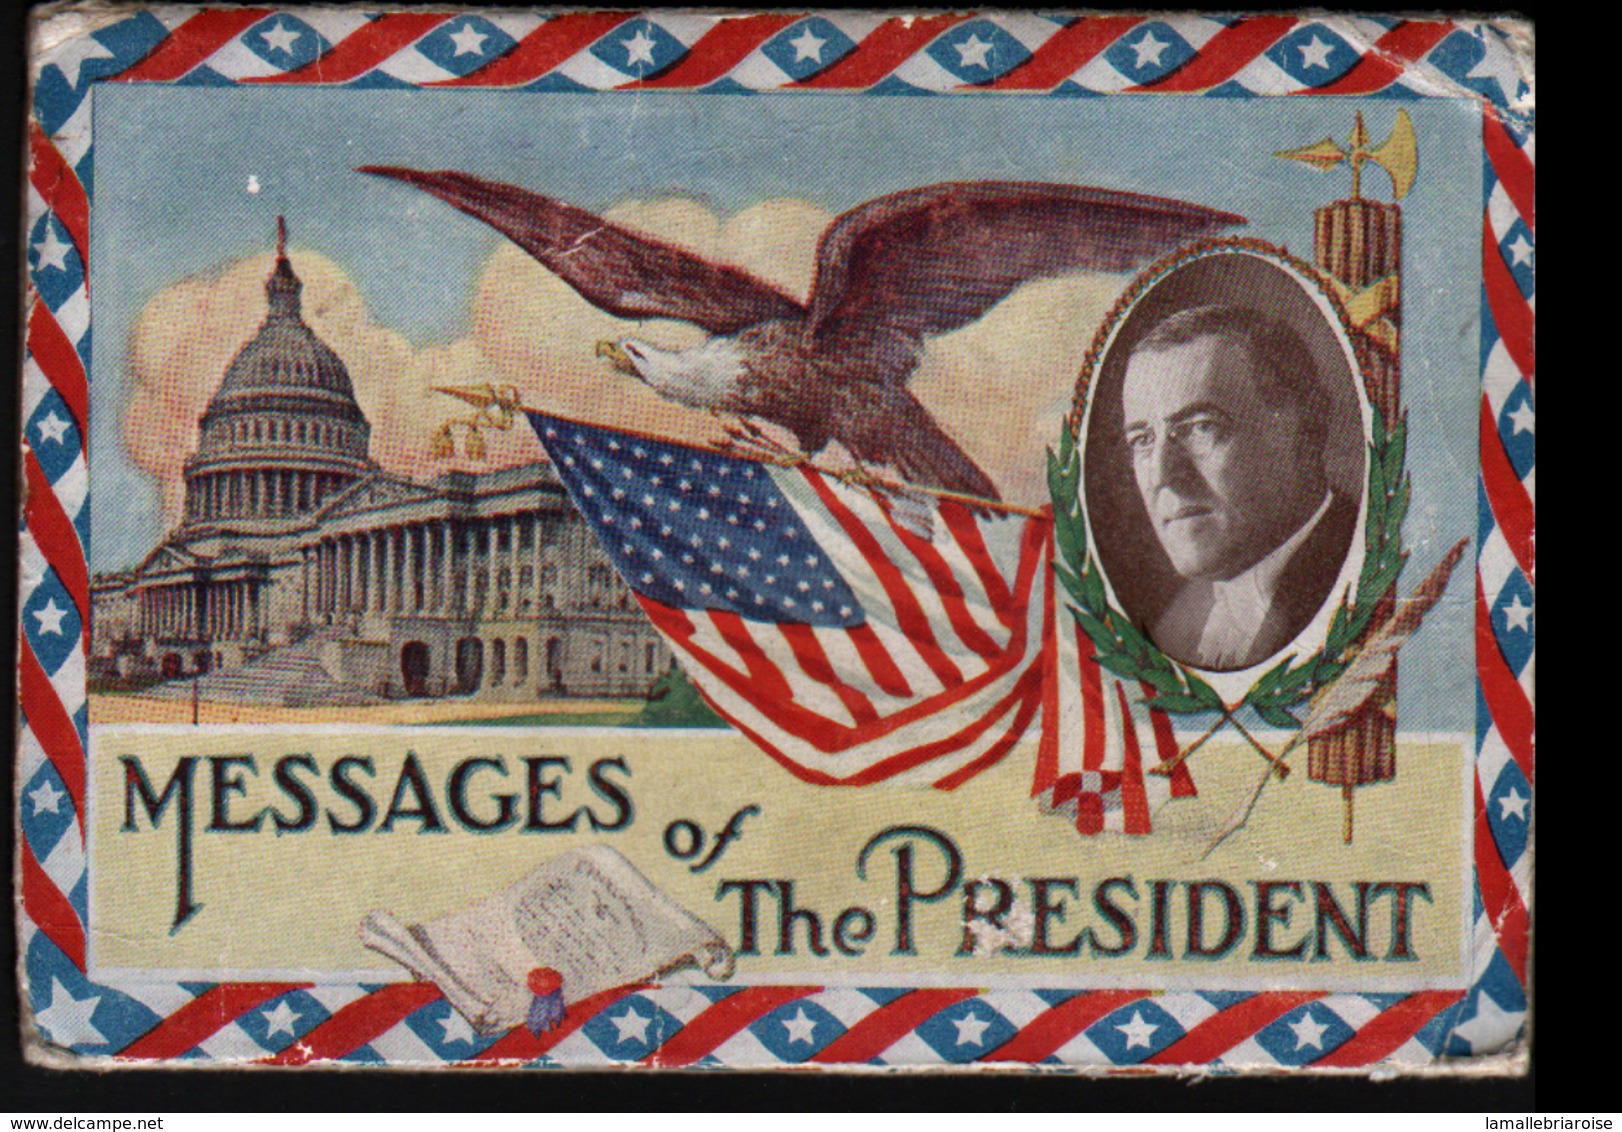 Etats-Unis D'Amerique, Messages Of The President, - Präsidenten